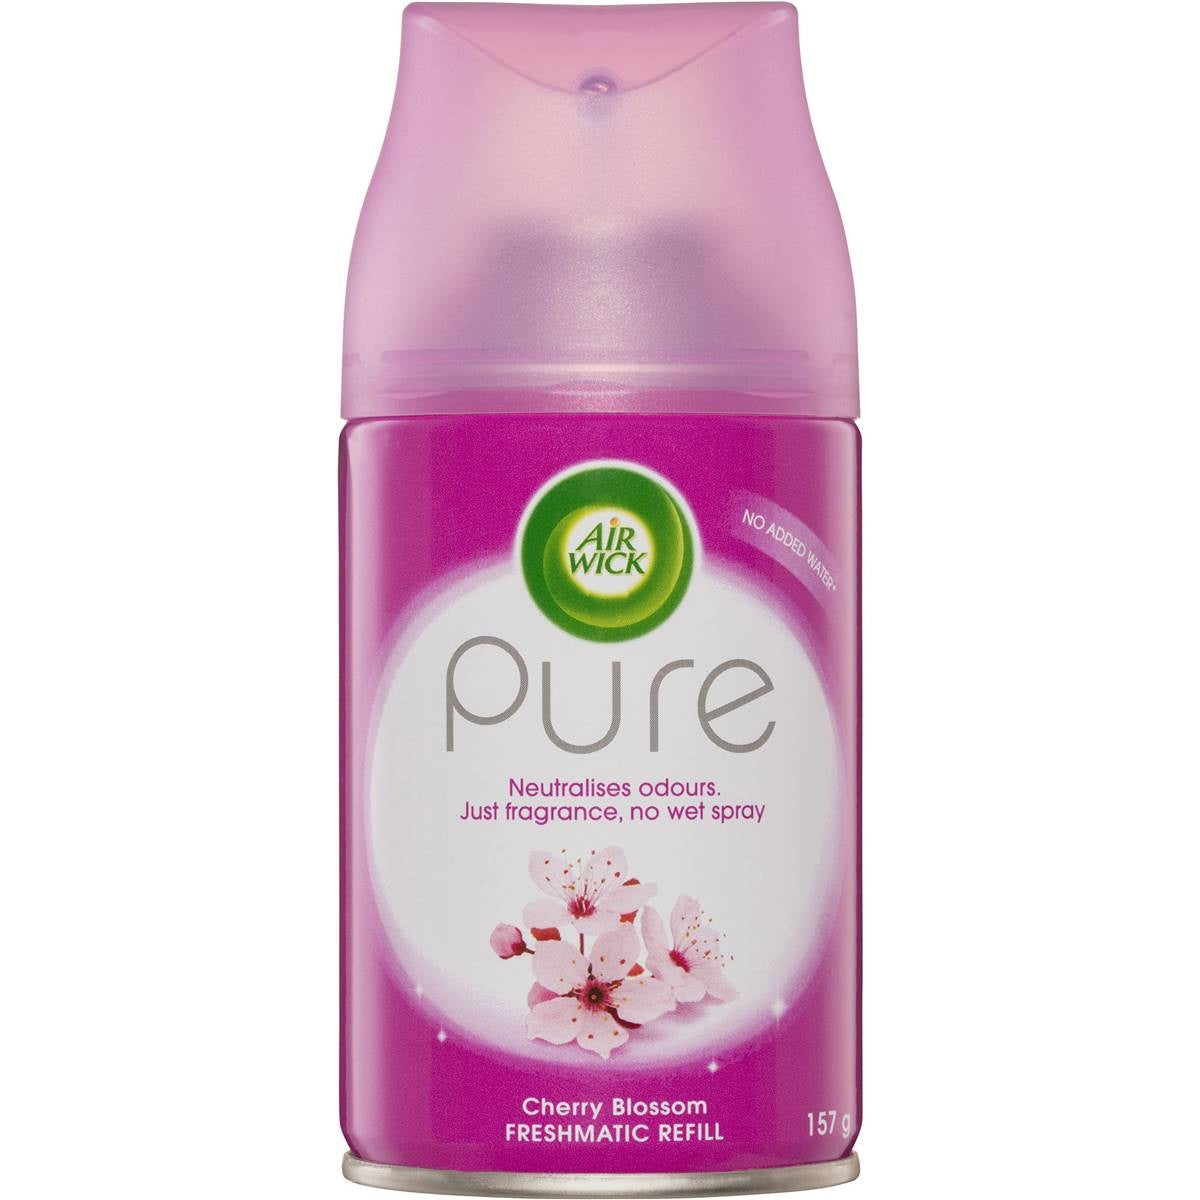 Air Wick Pure Freshmatic Refill Cherry Blossom 157g